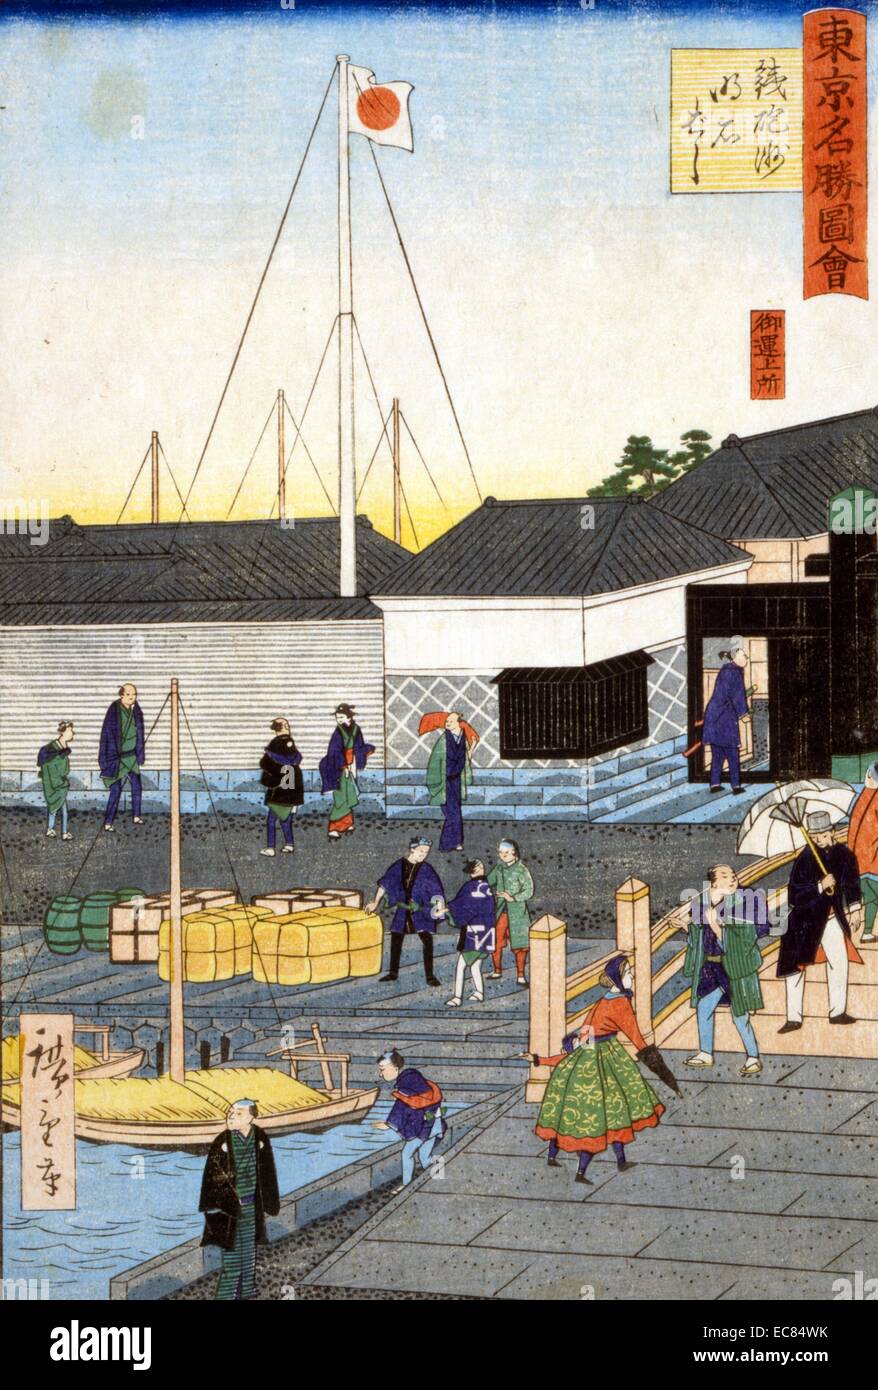 Gravure sur bois japonaise coloriés à la main. Scenic shot des docks à Tokyo au Japon. Un voilier se trouve au port tandis que les gens marchent le long des quais. C1870 Banque D'Images